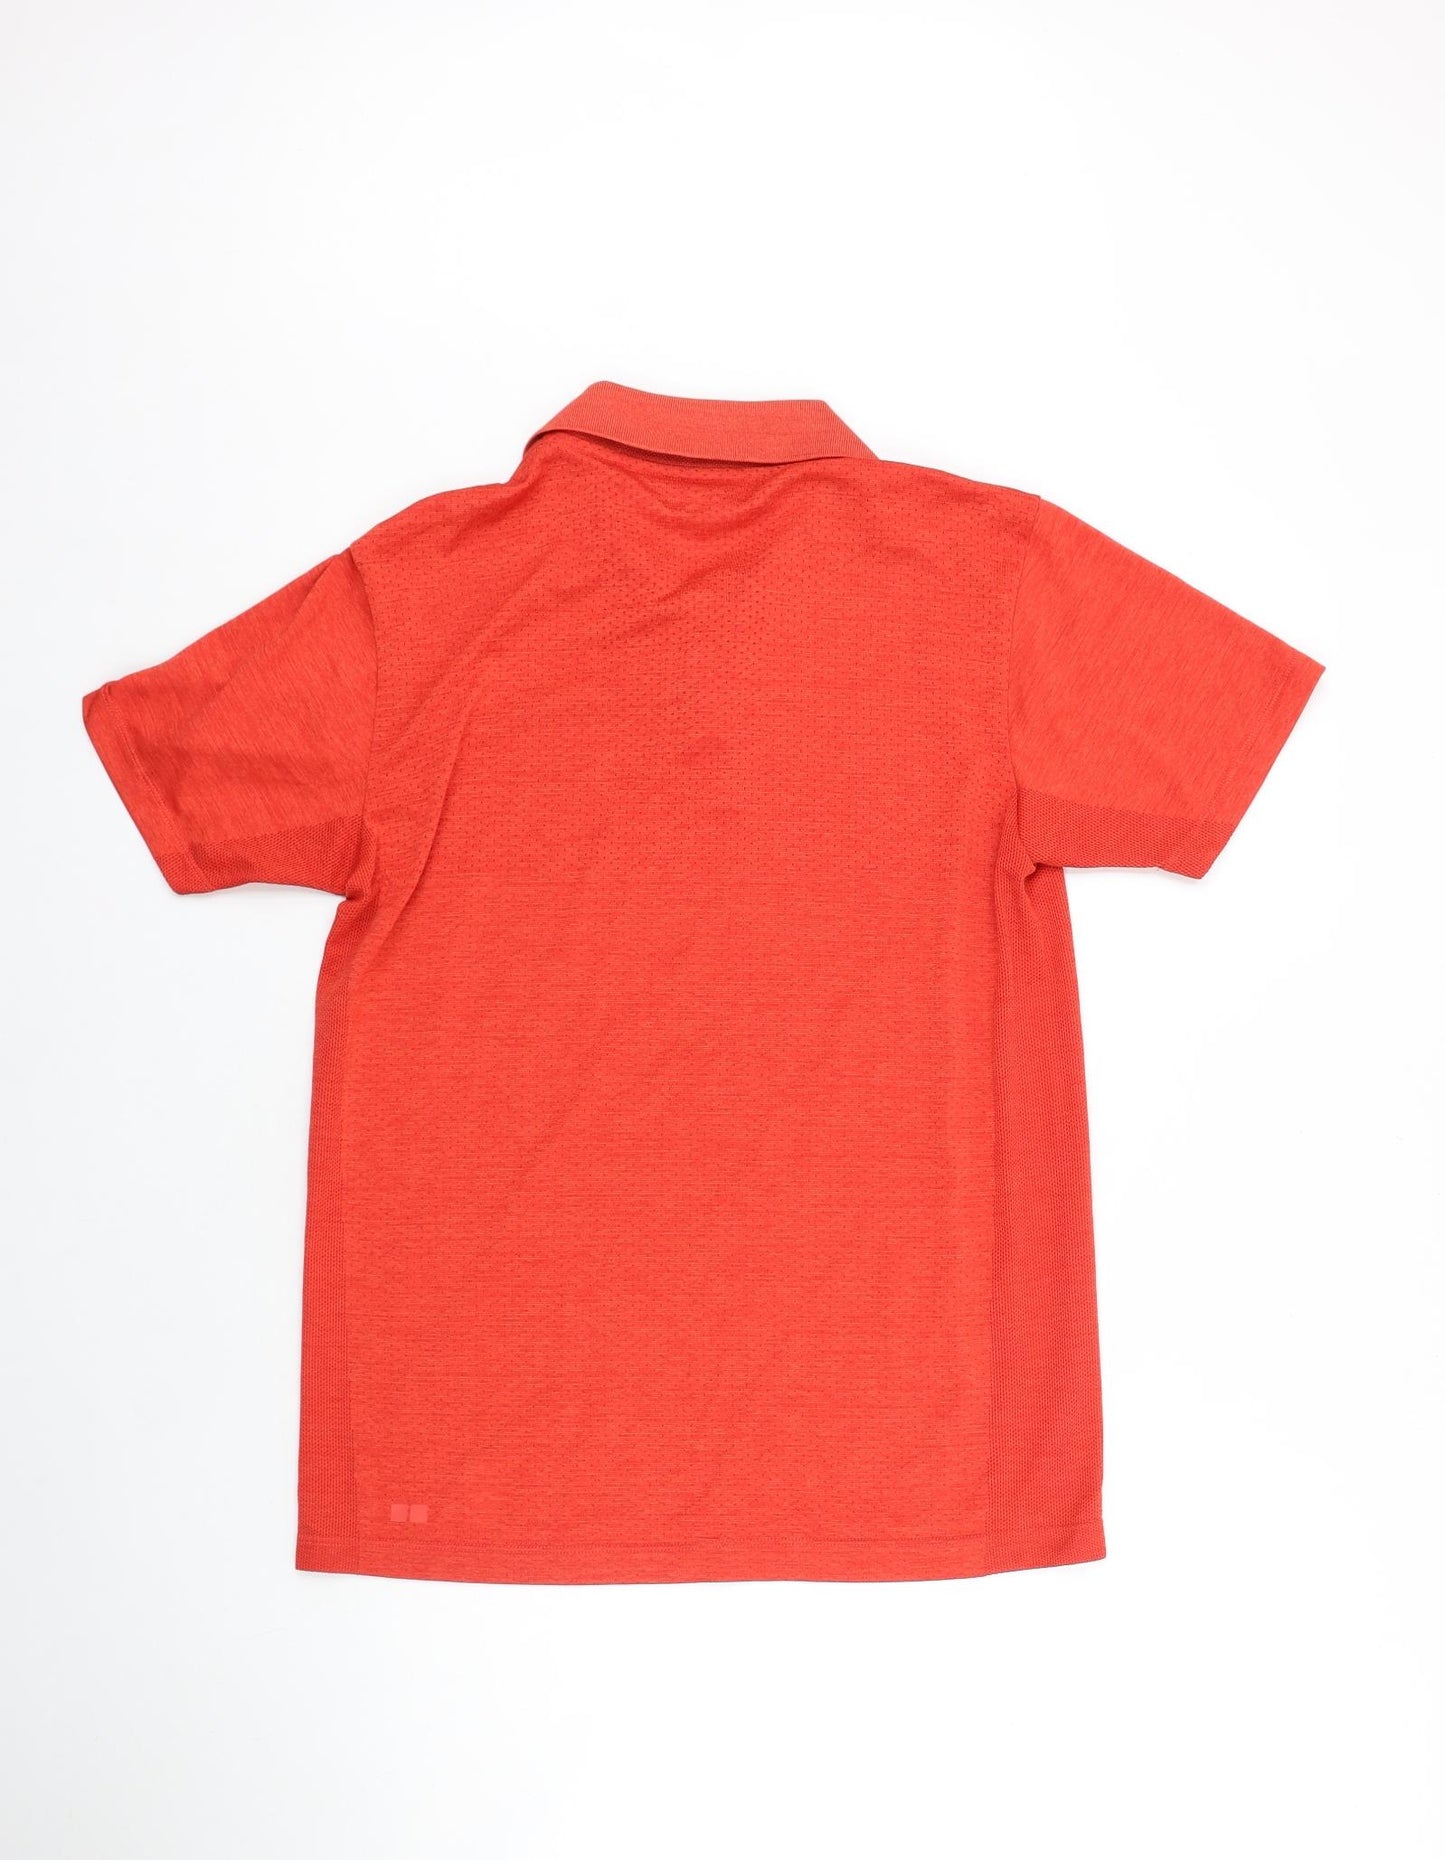 Uniqlo Mens Orange Polyester Basic Polo Size S Collared Button